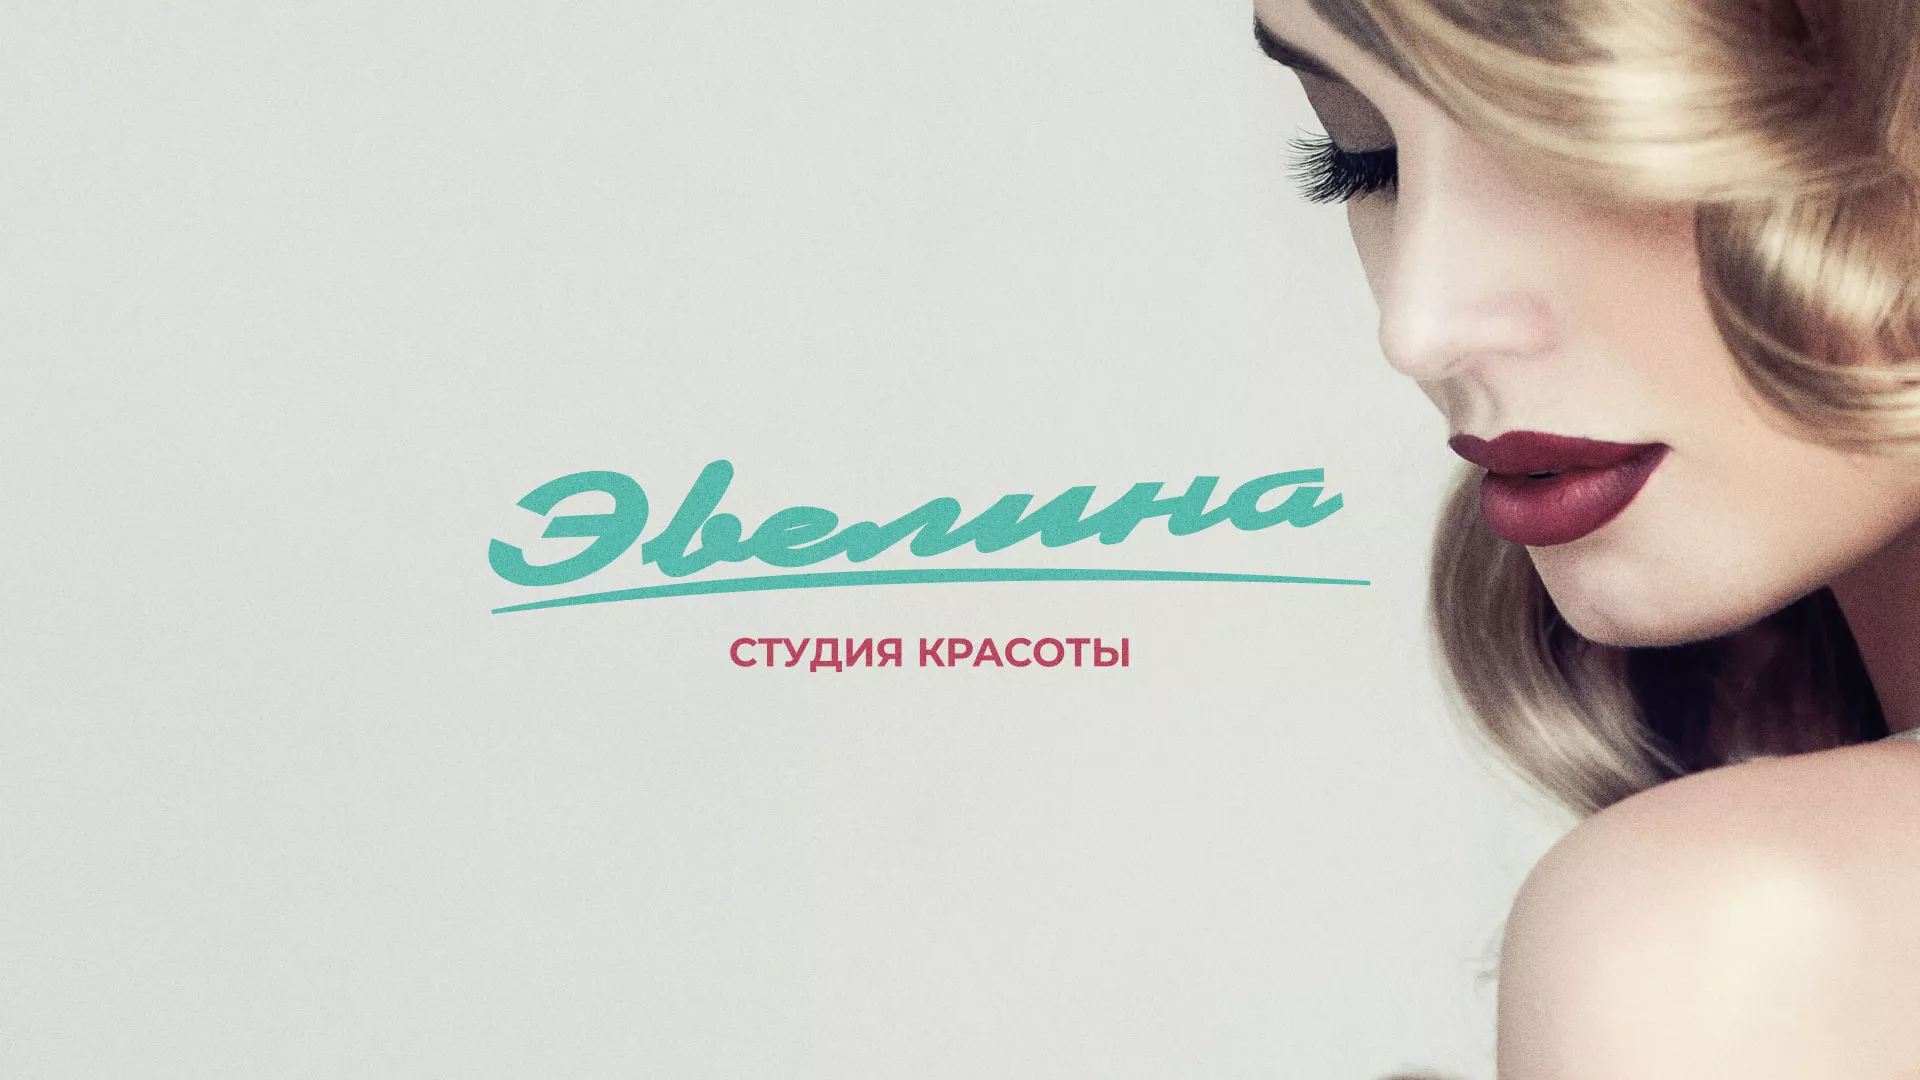 Разработка сайта для салона красоты «Эвелина» в Екатеринбурге